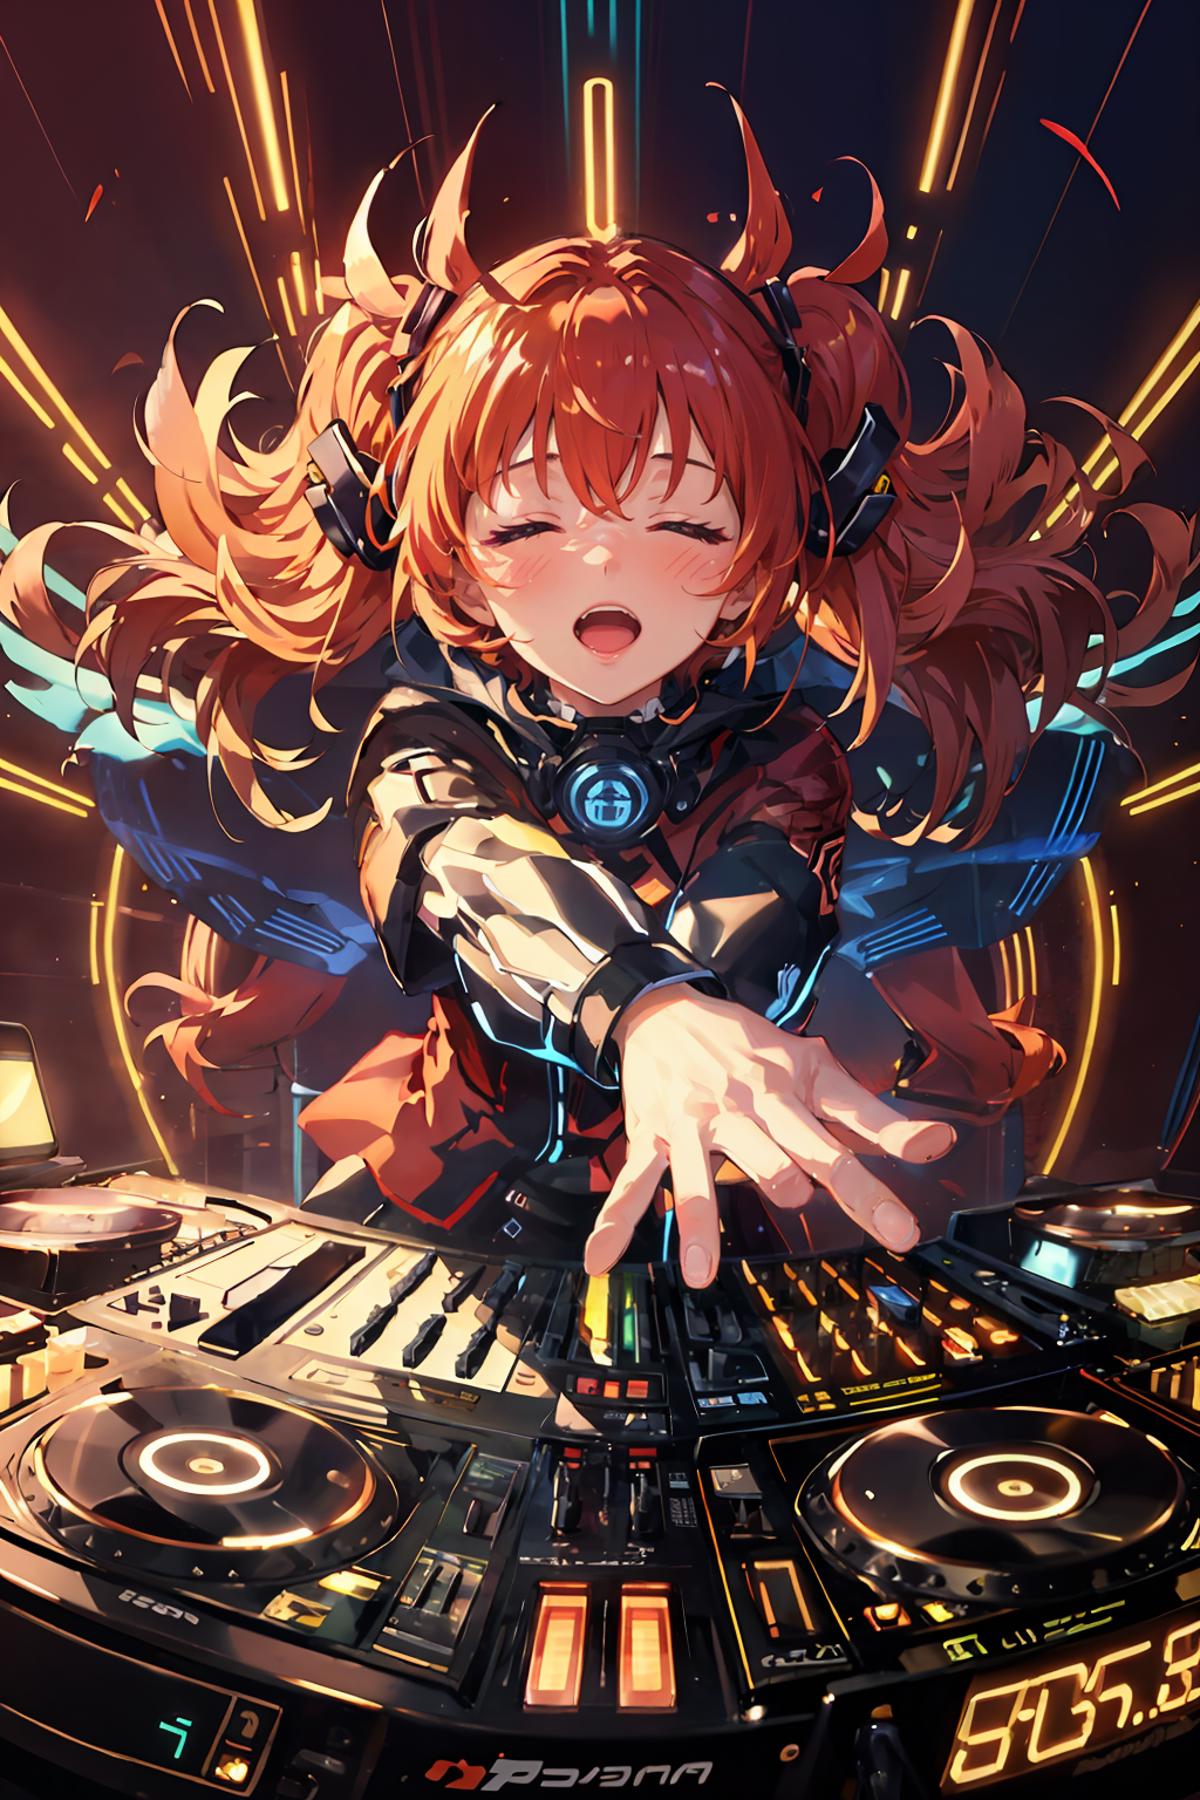 DJ electronic music image by tonyhs